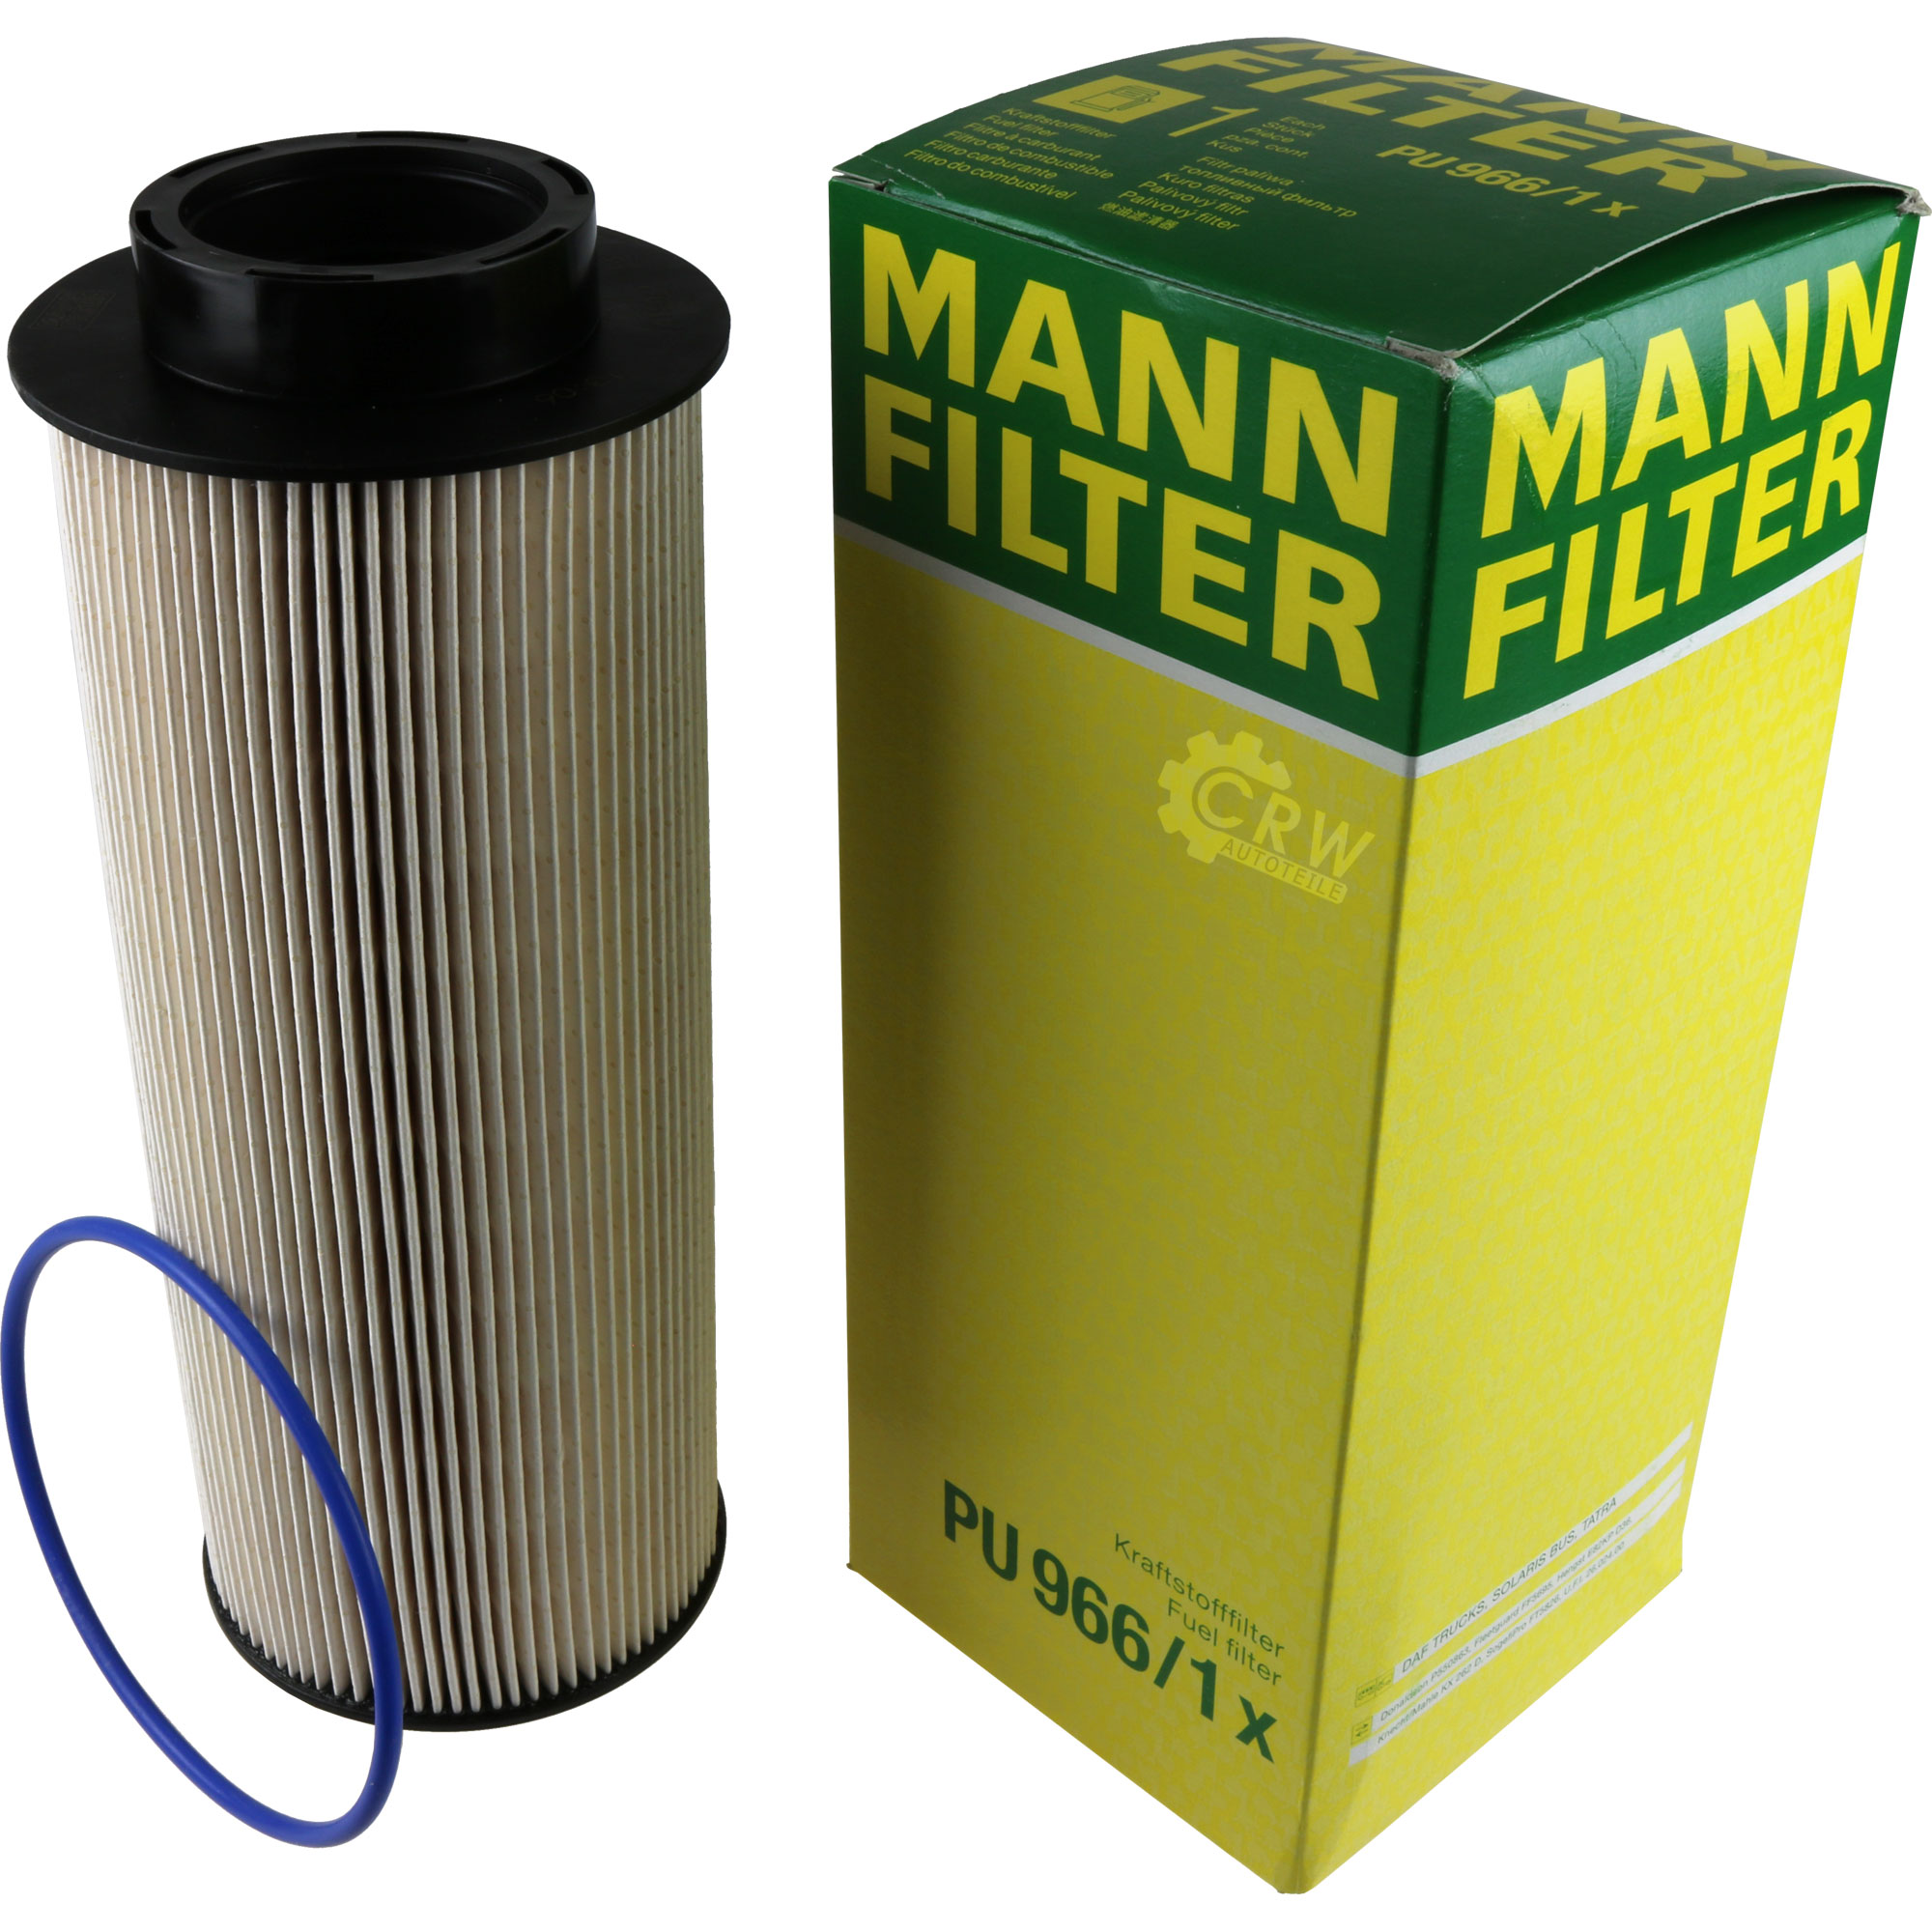 MANN-FILTER Kraftstofffilter PU 966/1 x Fuel Filter